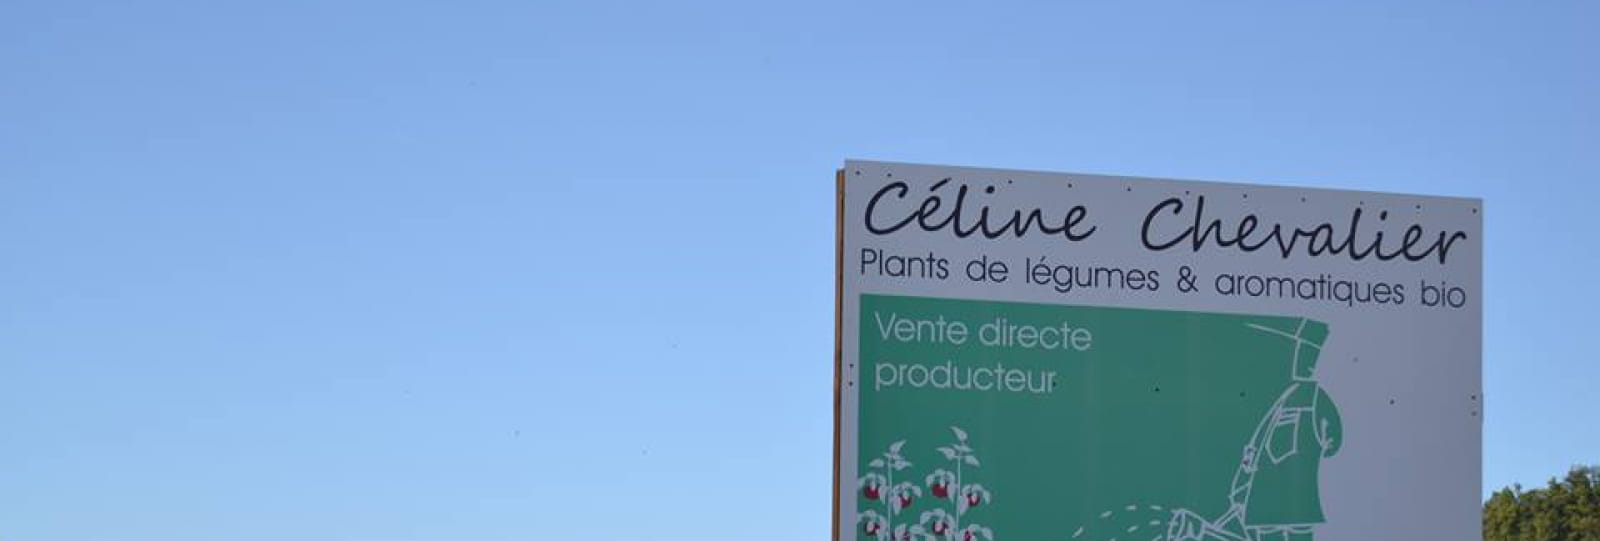 Les Plants de Céline